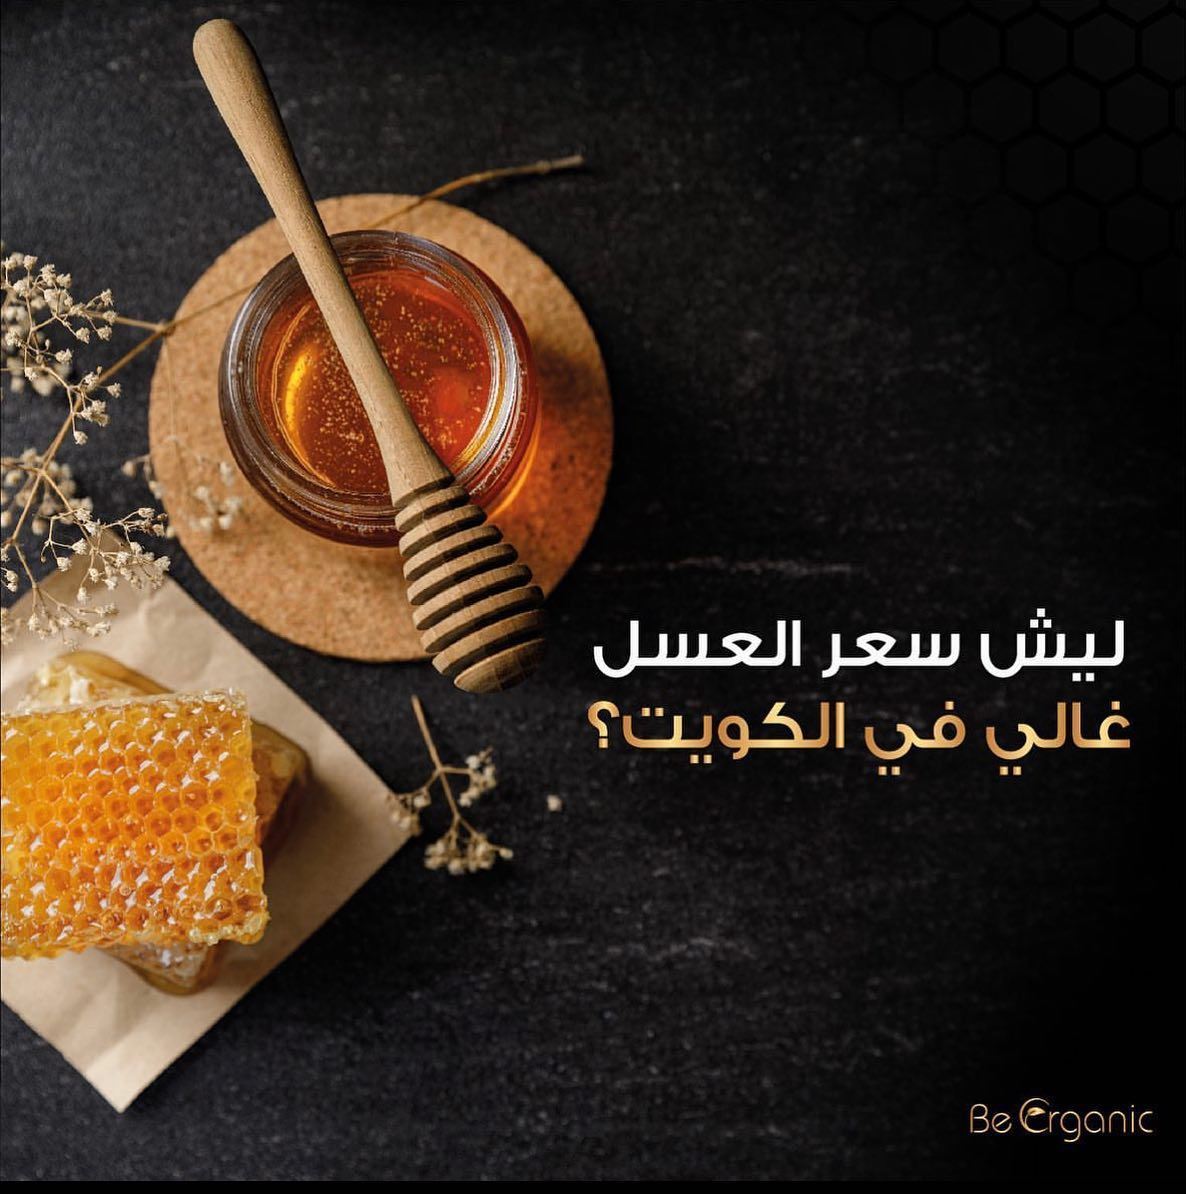 ليش سعر العسل غالي في الكويت؟